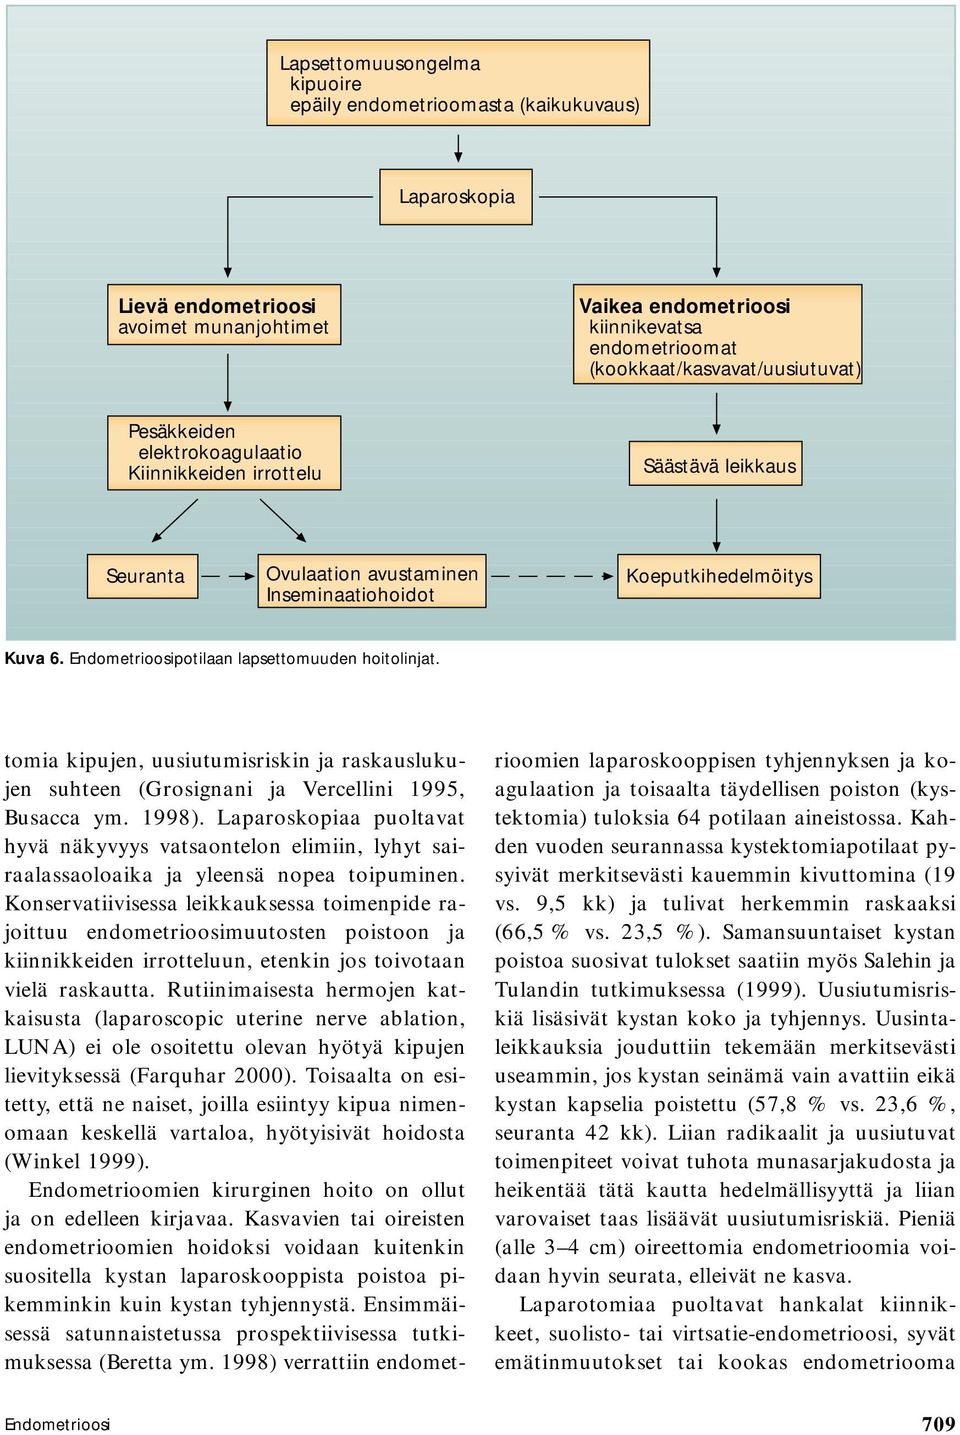 potilaan lapsettomuuden hoitolinjat. tomia kipujen, uusiutumisriskin ja raskauslukujen suhteen (Grosignani ja Vercellini 1995, Busacca ym. 1998).